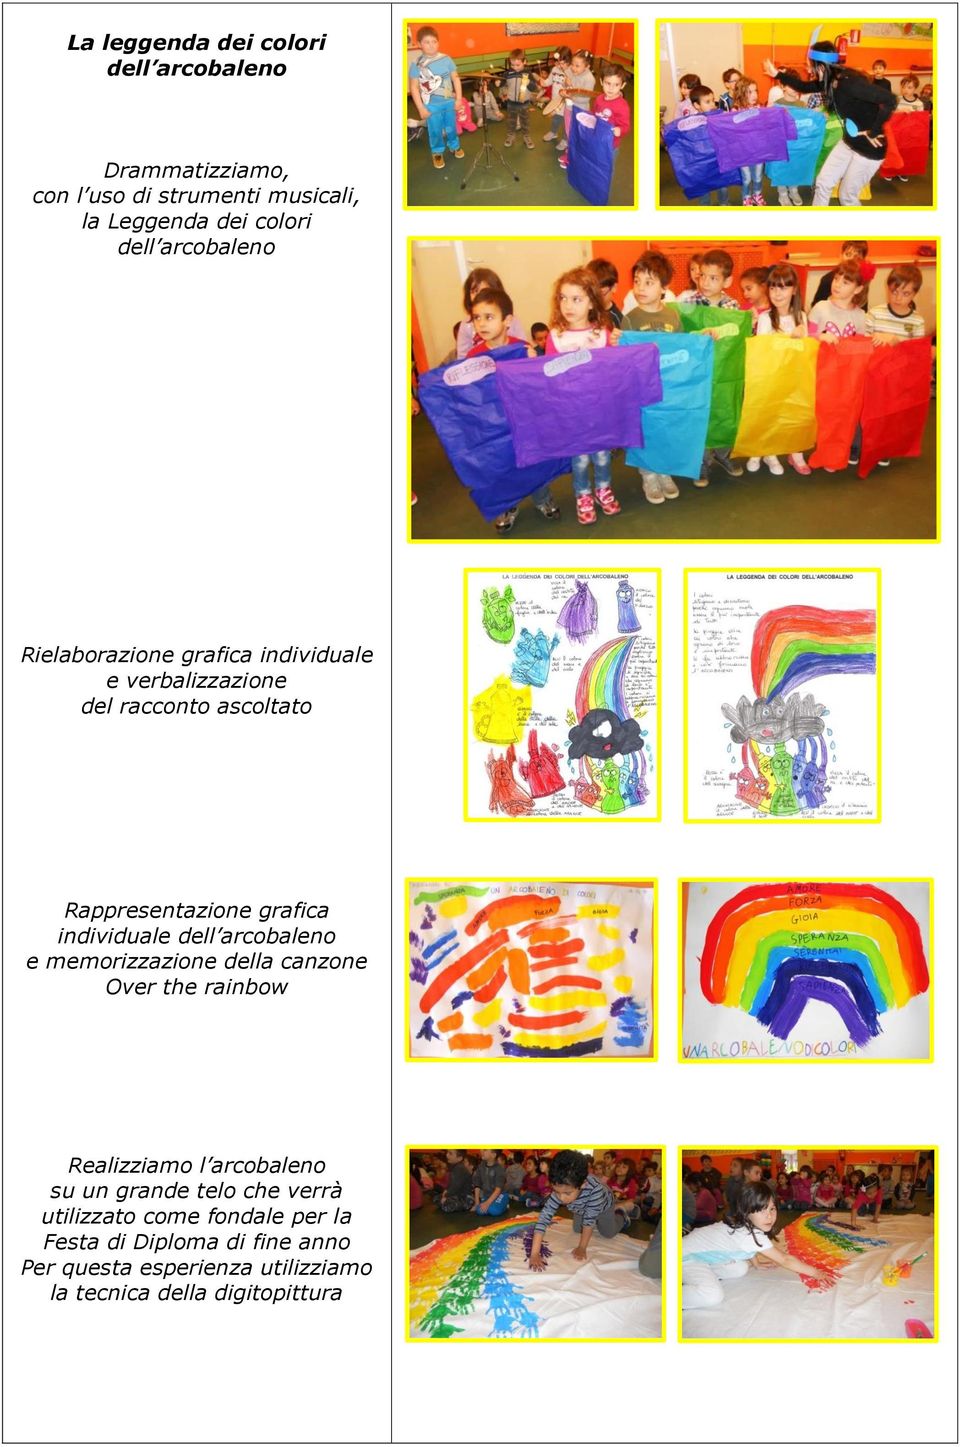 individuale dell arcobaleno e memorizzazione della canzone Over the rainbow Realizziamo l arcobaleno su un grande telo